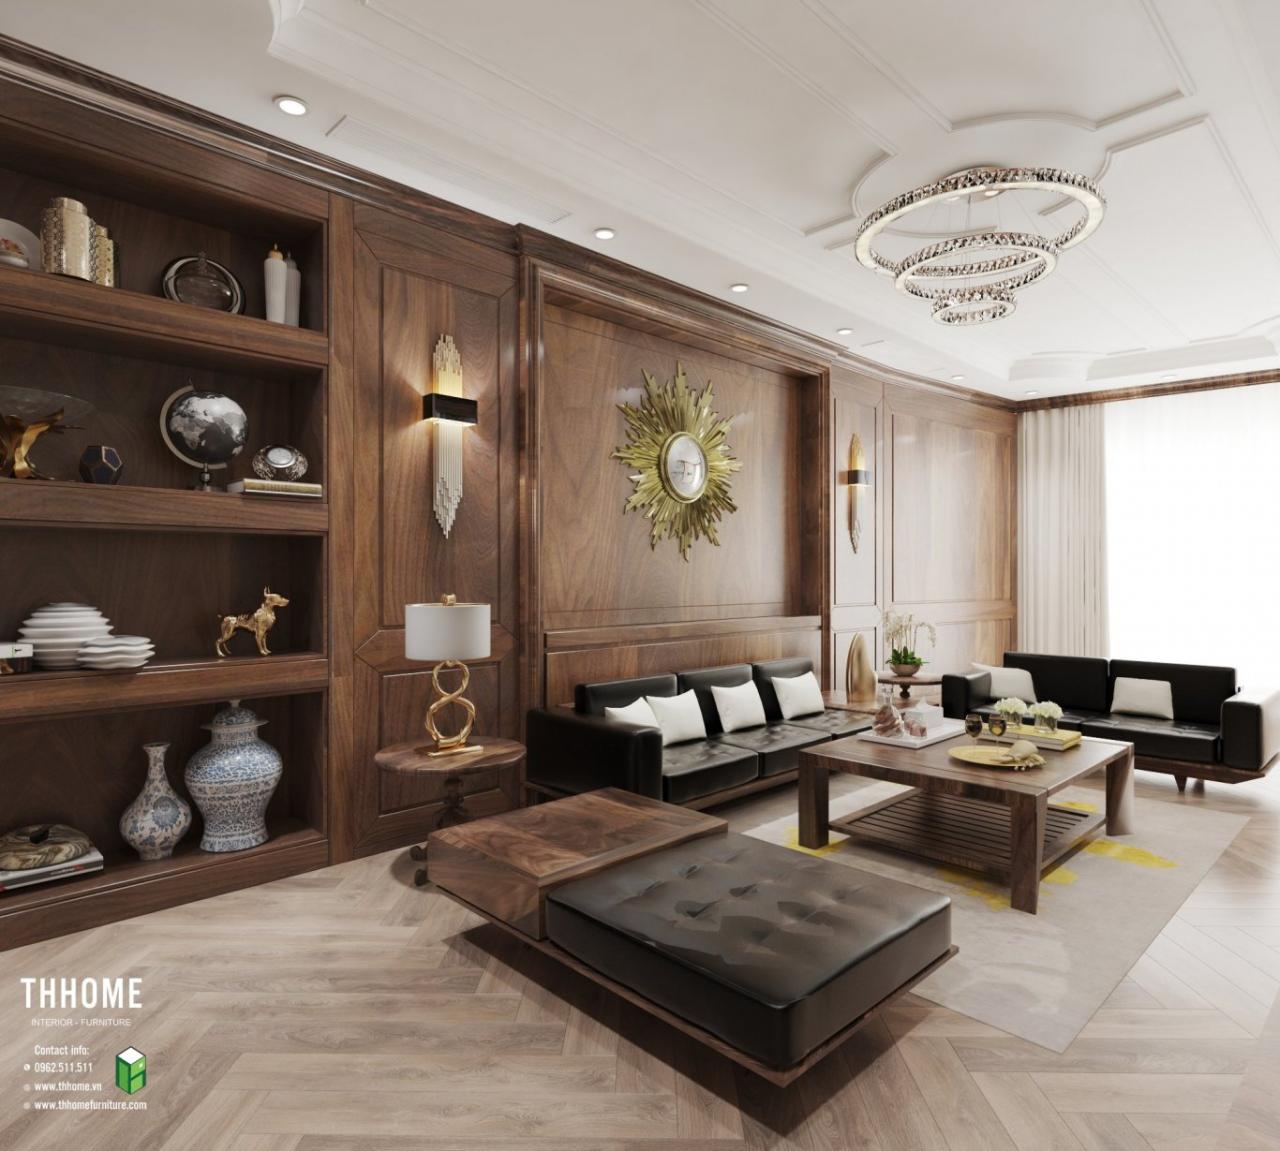 Không gian nội thất ấn tượng từ gỗ óc chó với tone nâu trầm ấm và những đường vân gỗ uốn lượn